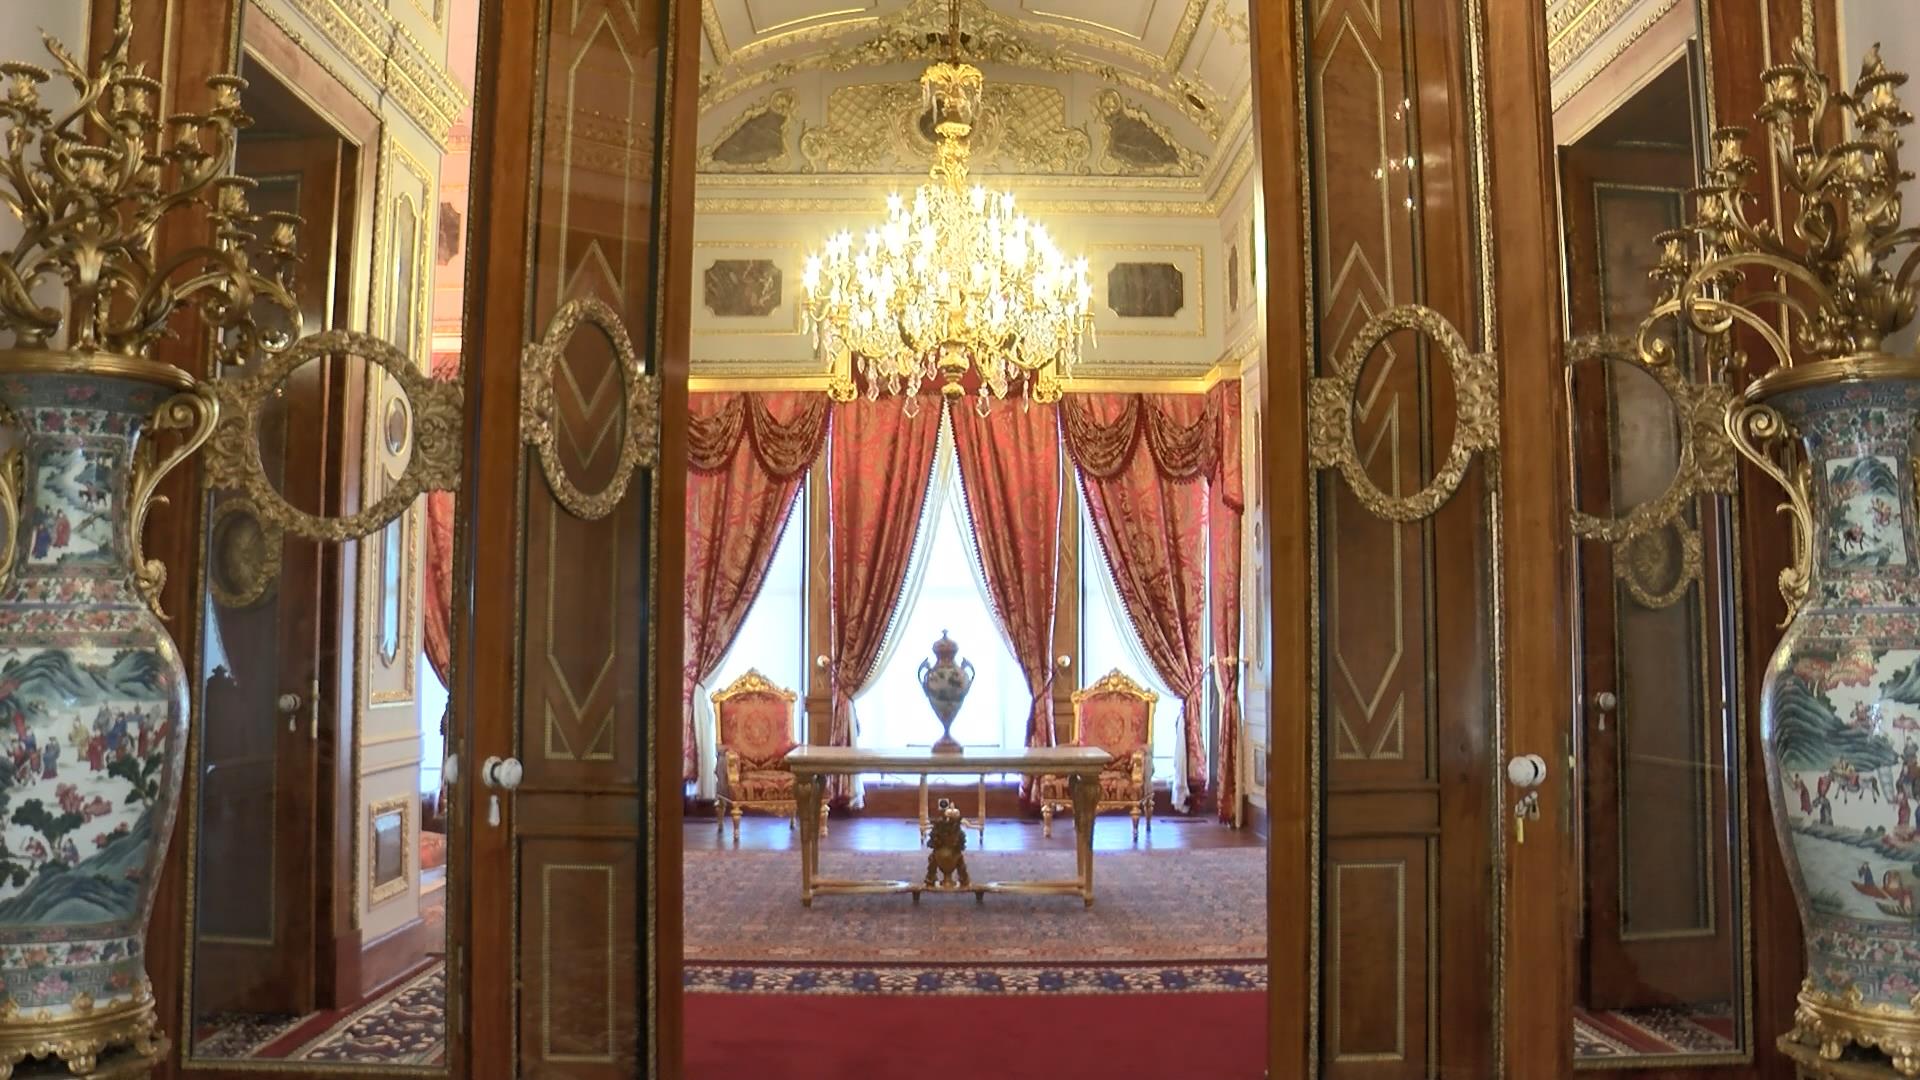 Restorasyonu tamamlanan Topkapı Sarayı'nın 164 yıllık ''Mecidiye Köşkü'' ziyarete açılıyor